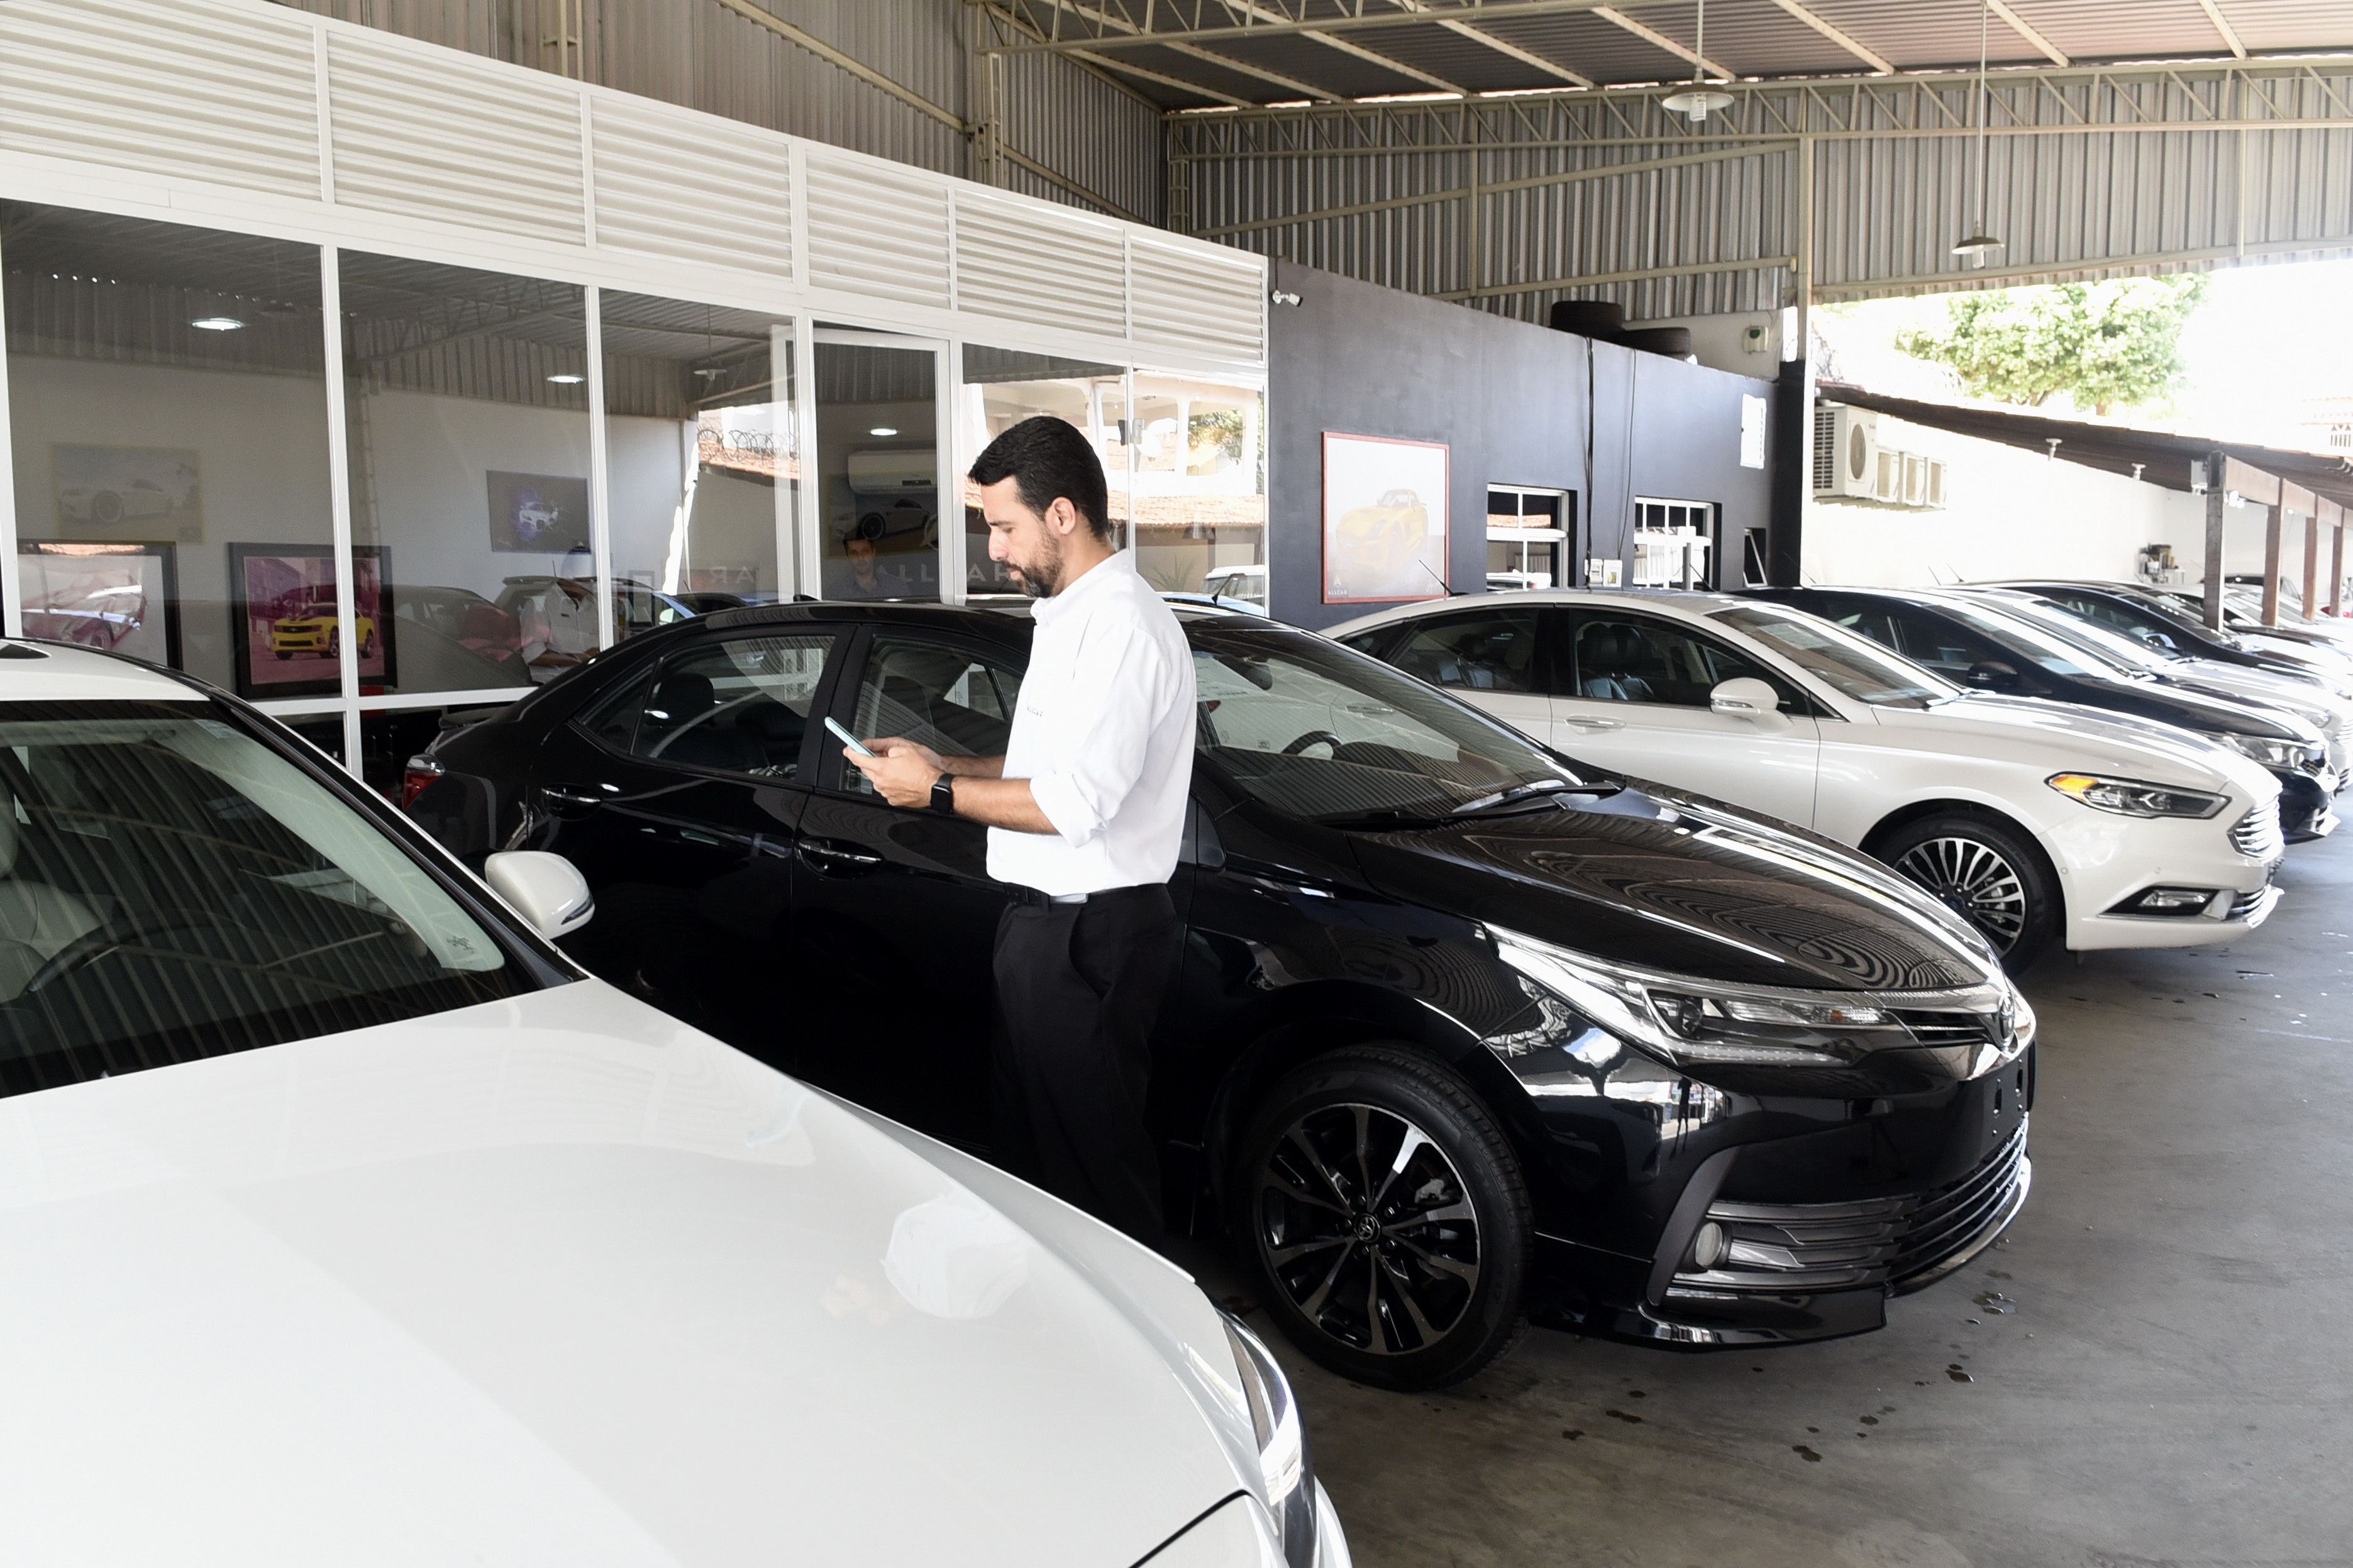 Revenda de veículos All Car, em Itapoã. Rodrigo Lima, diretor do grupo All Car, a abertura da loja facilita a negociação e a venda do veículos.